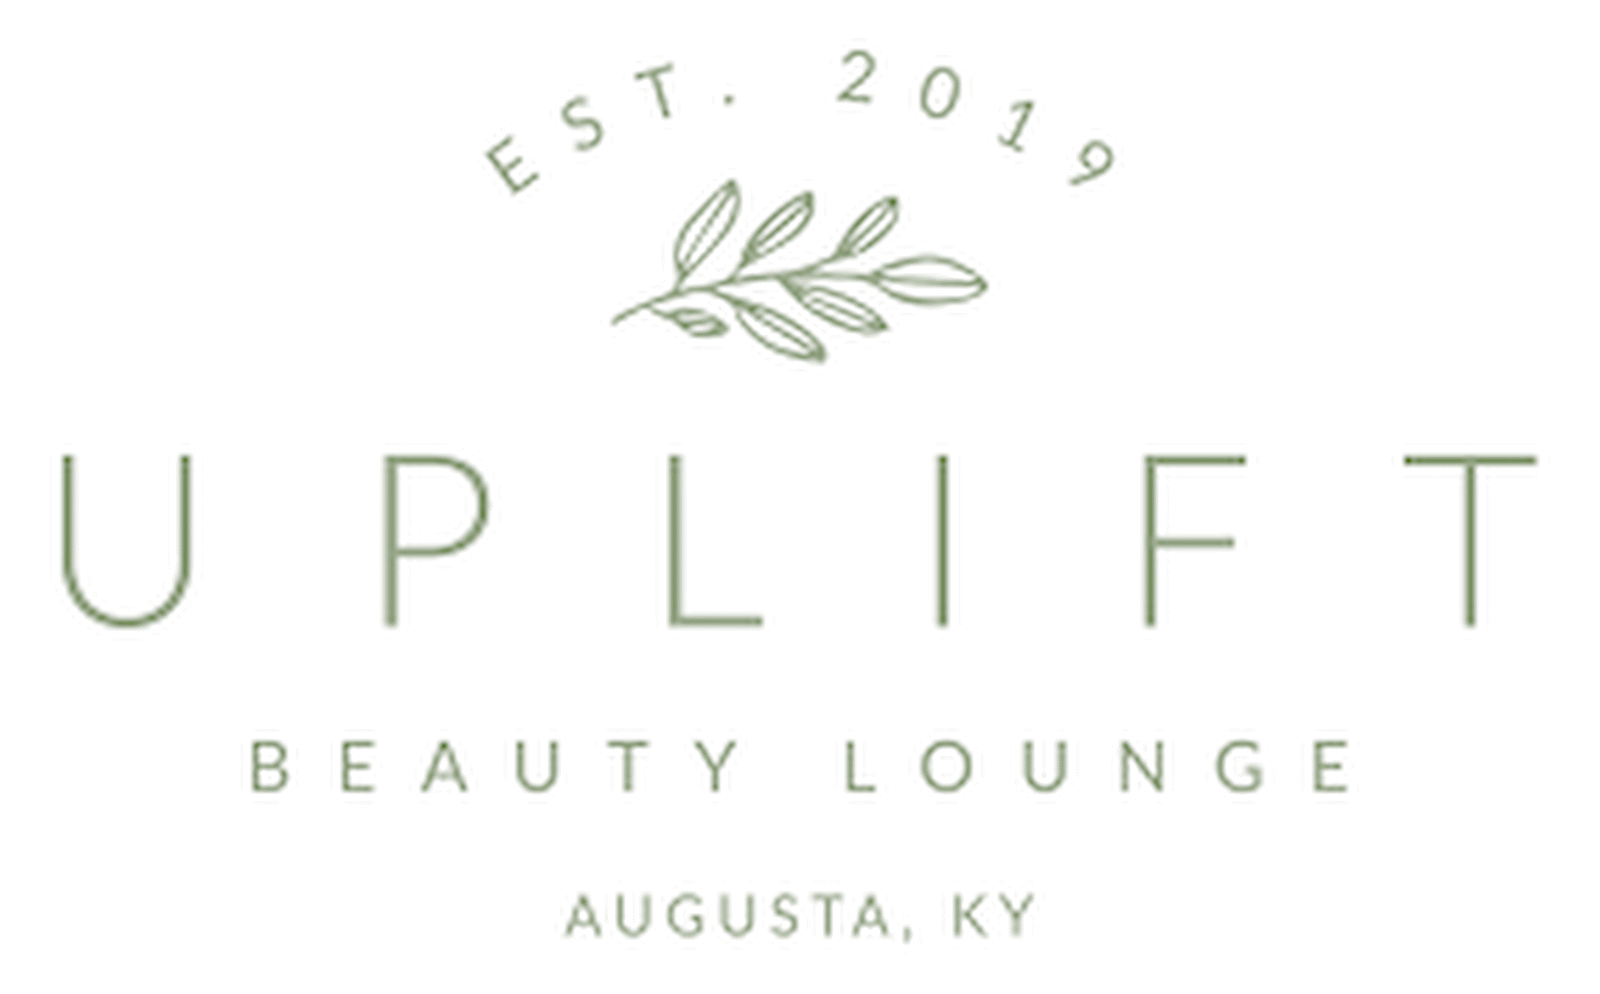 Uplift Beauty Lounge